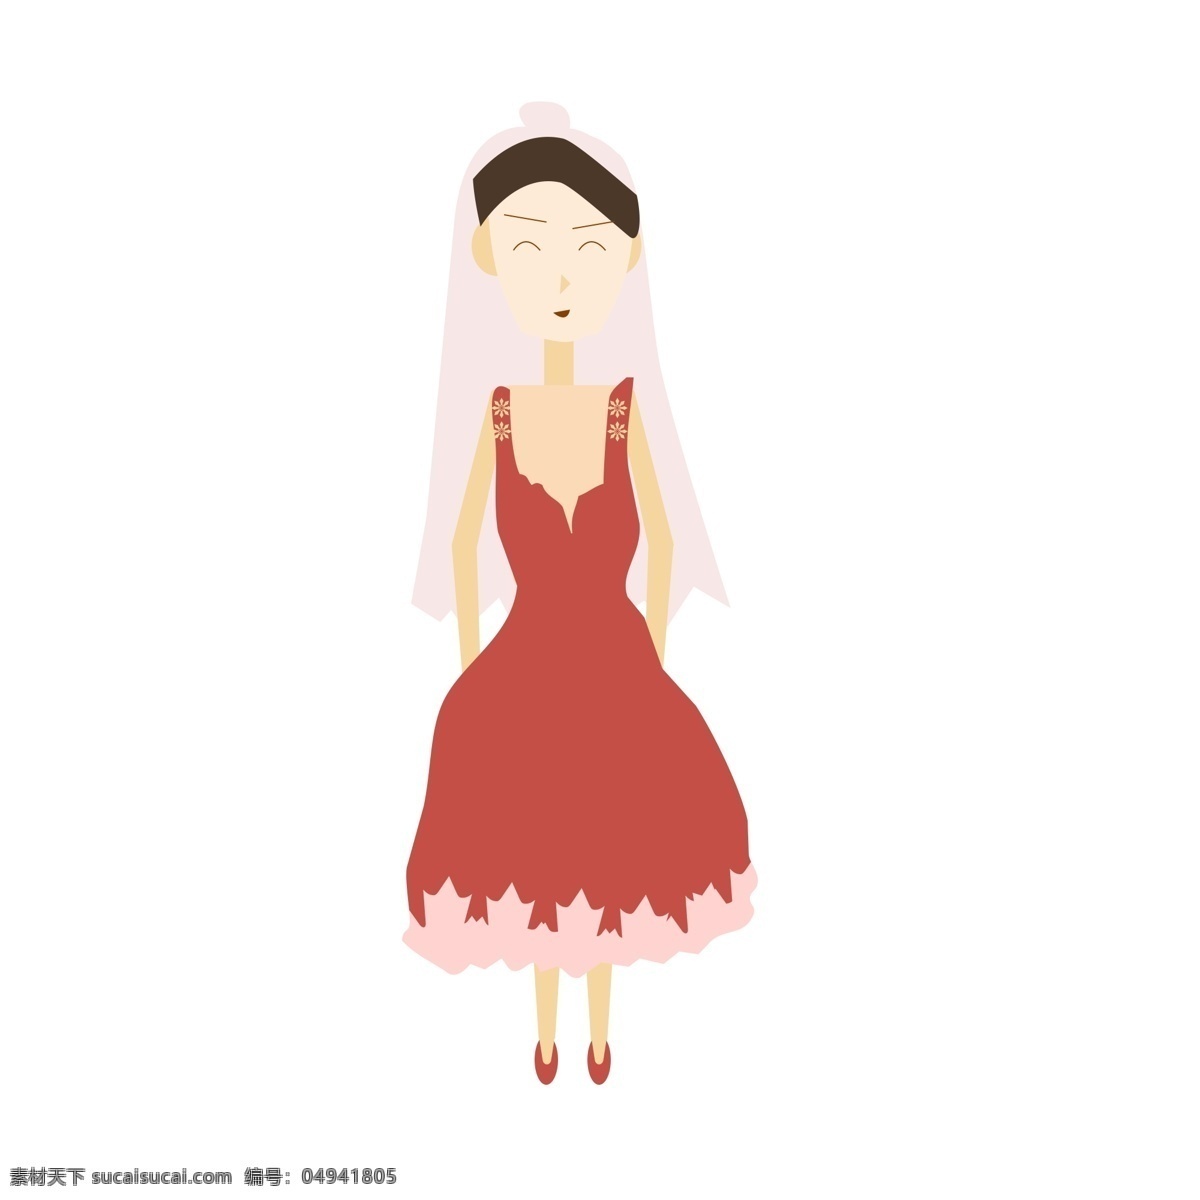 ps 矢量 插画 人物 设计素材 美女 红裙子 头纱 矢量人物